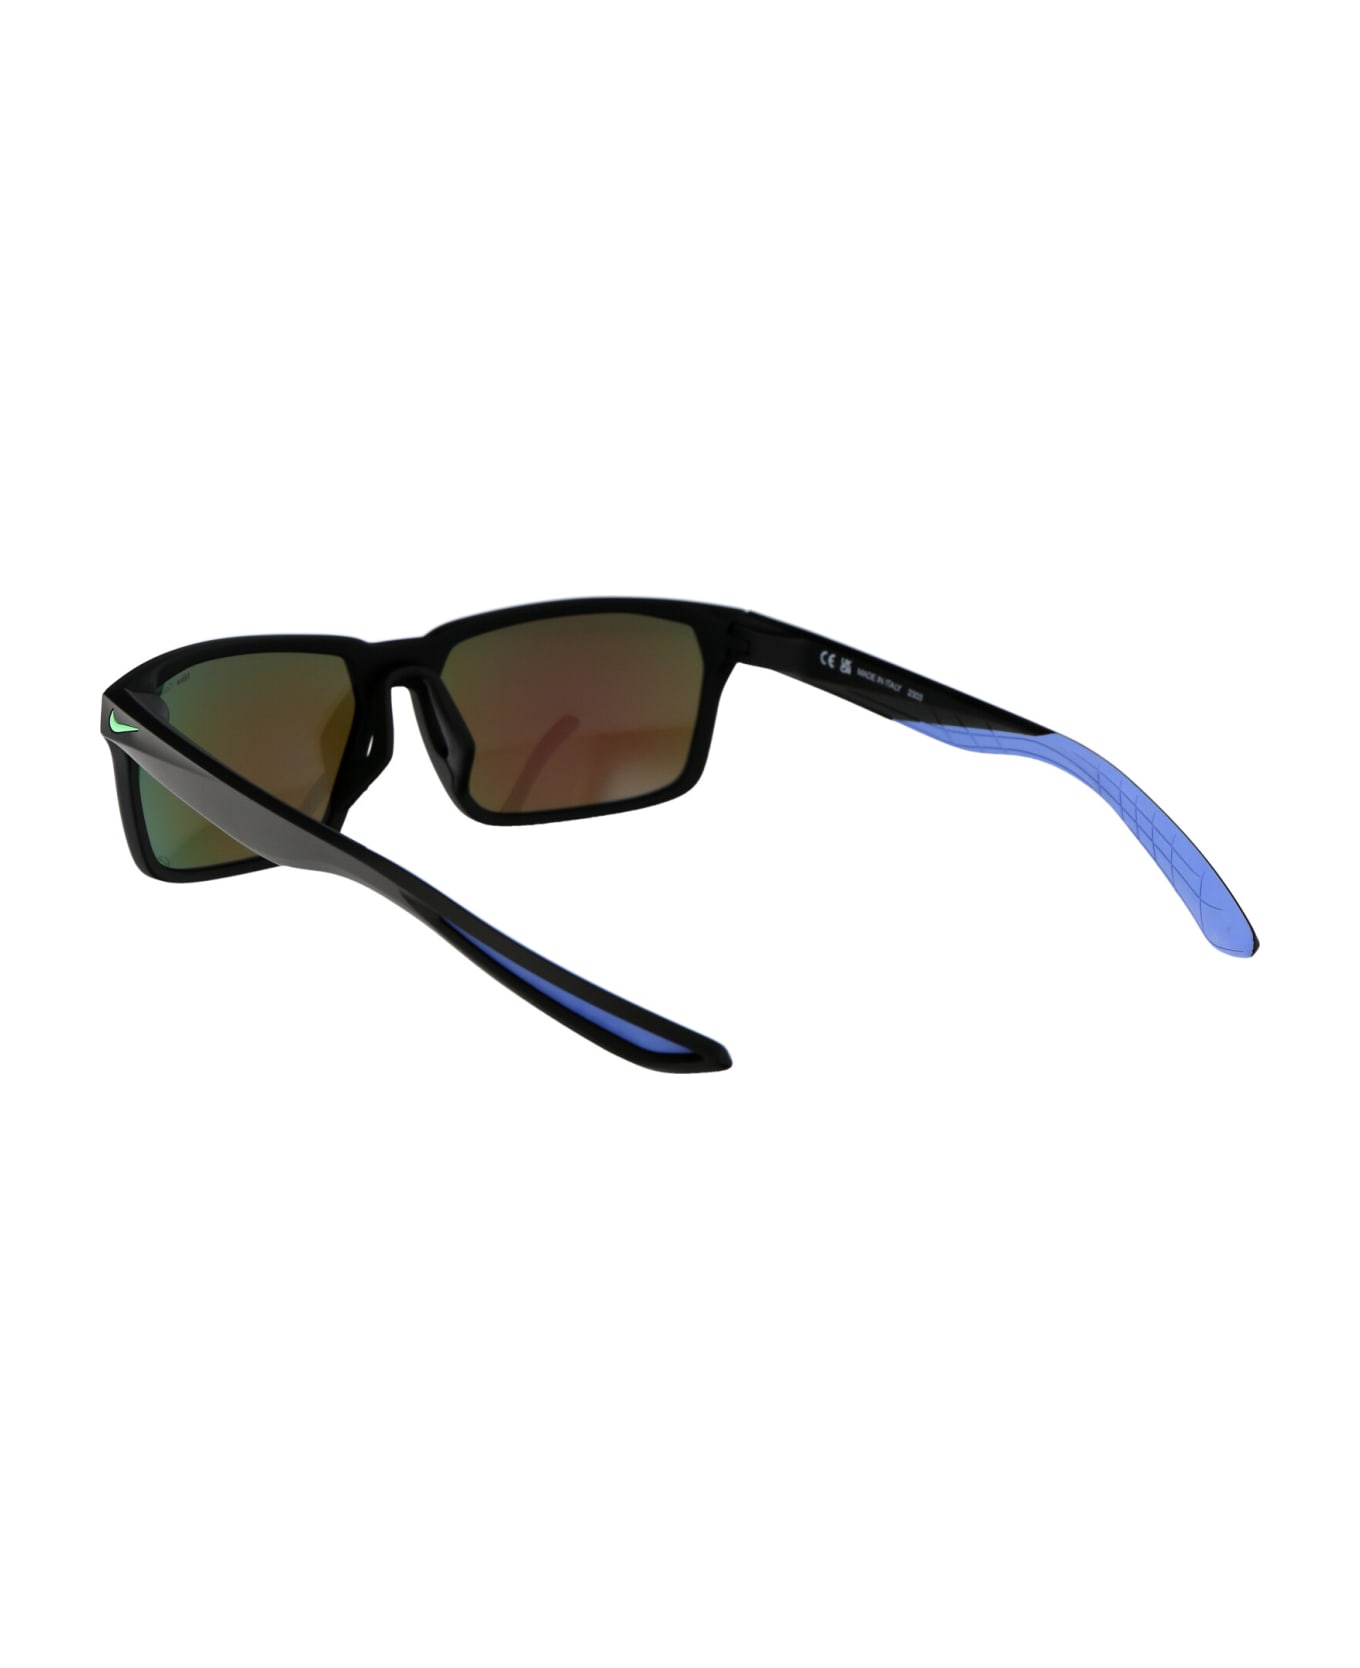 Nike Maverick Rge M Sunglasses - 010 BLACK/ELECTRO GREEN NOIR/VERT